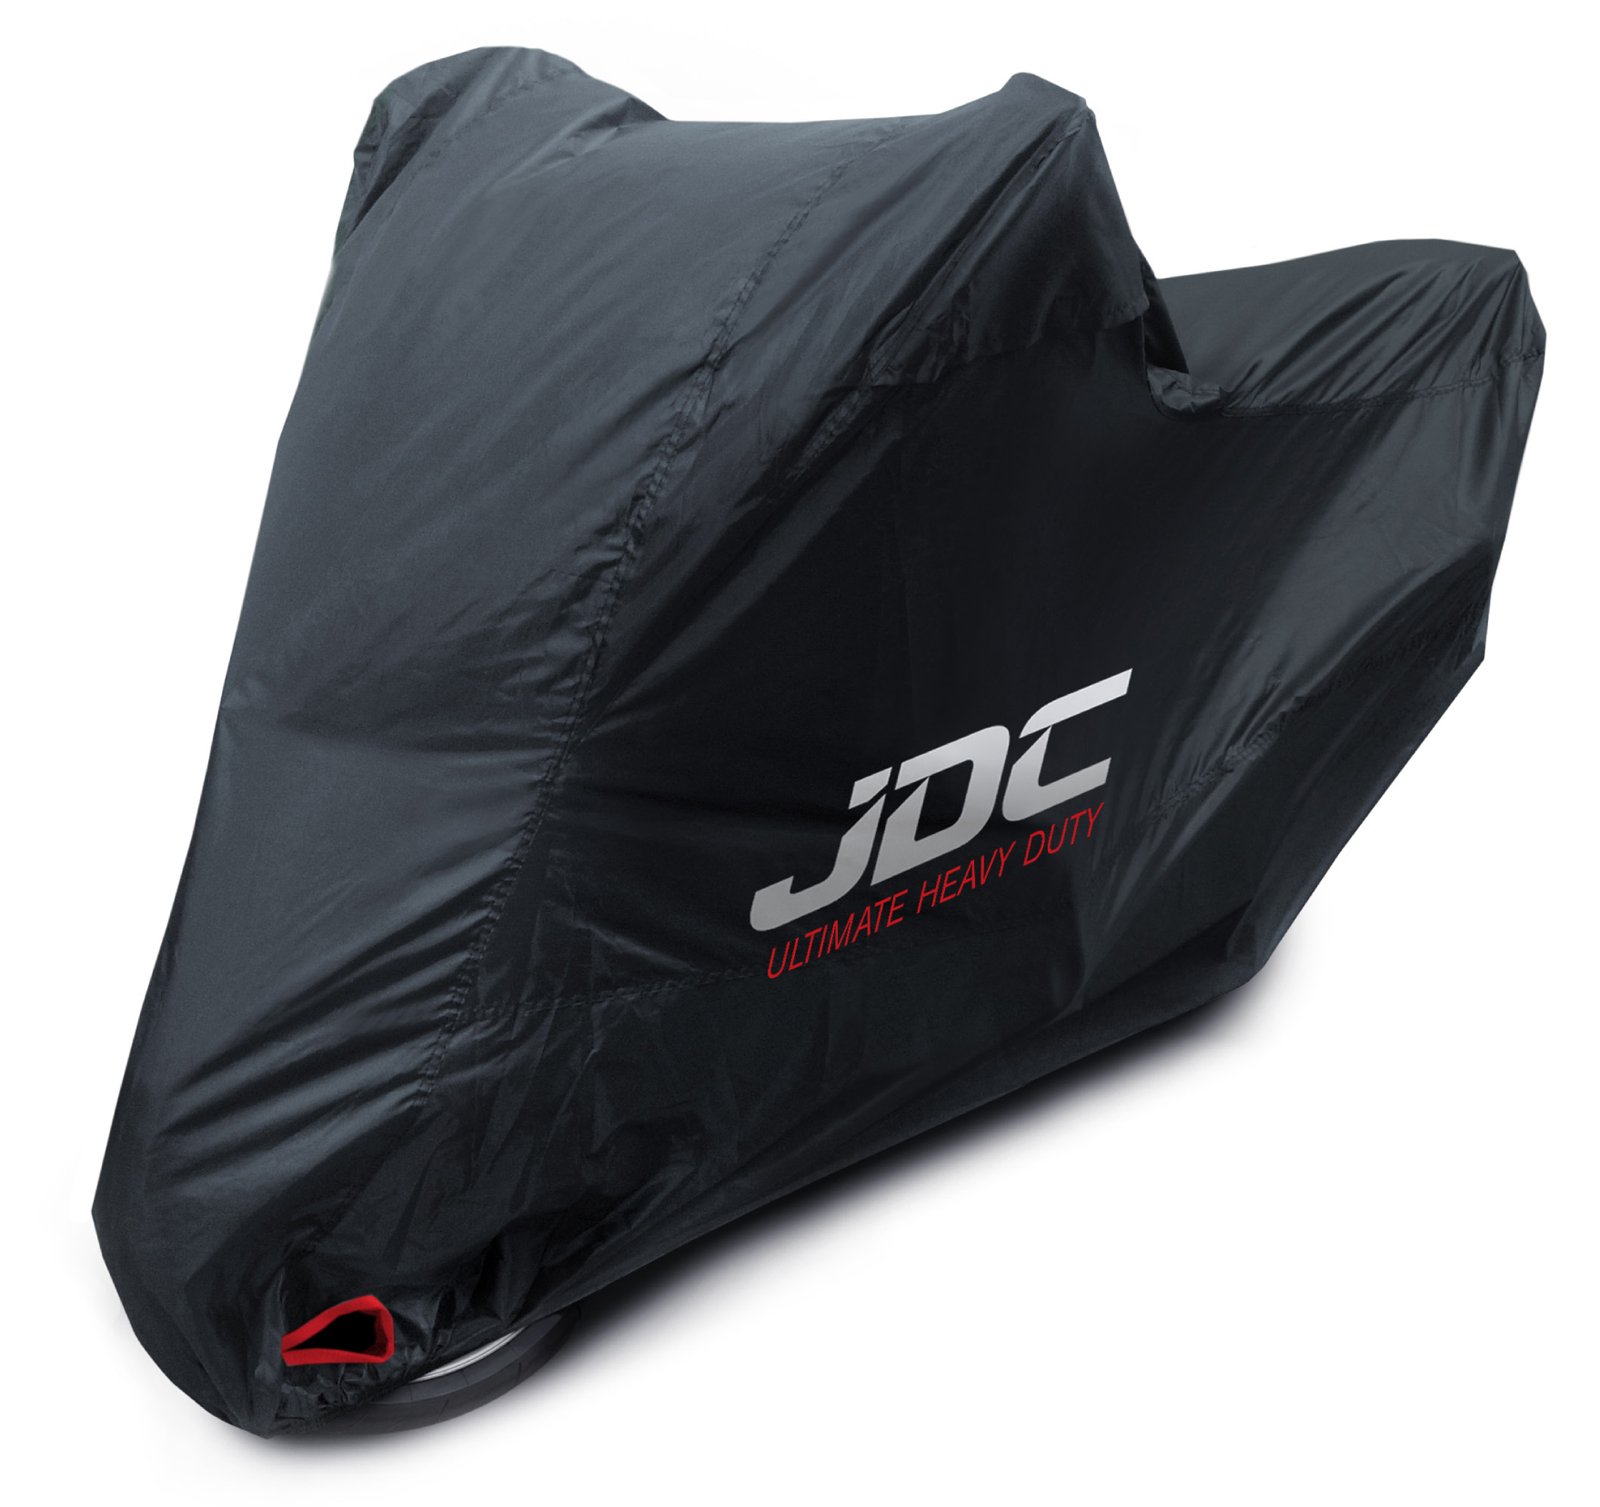 JDC 100% wasserdichte Motorradabdeckung - Ultimate Heavy Duty (Extra strapazierfähig, weiches Futter, hitzebeständig, verschweißte Nähte) - XL